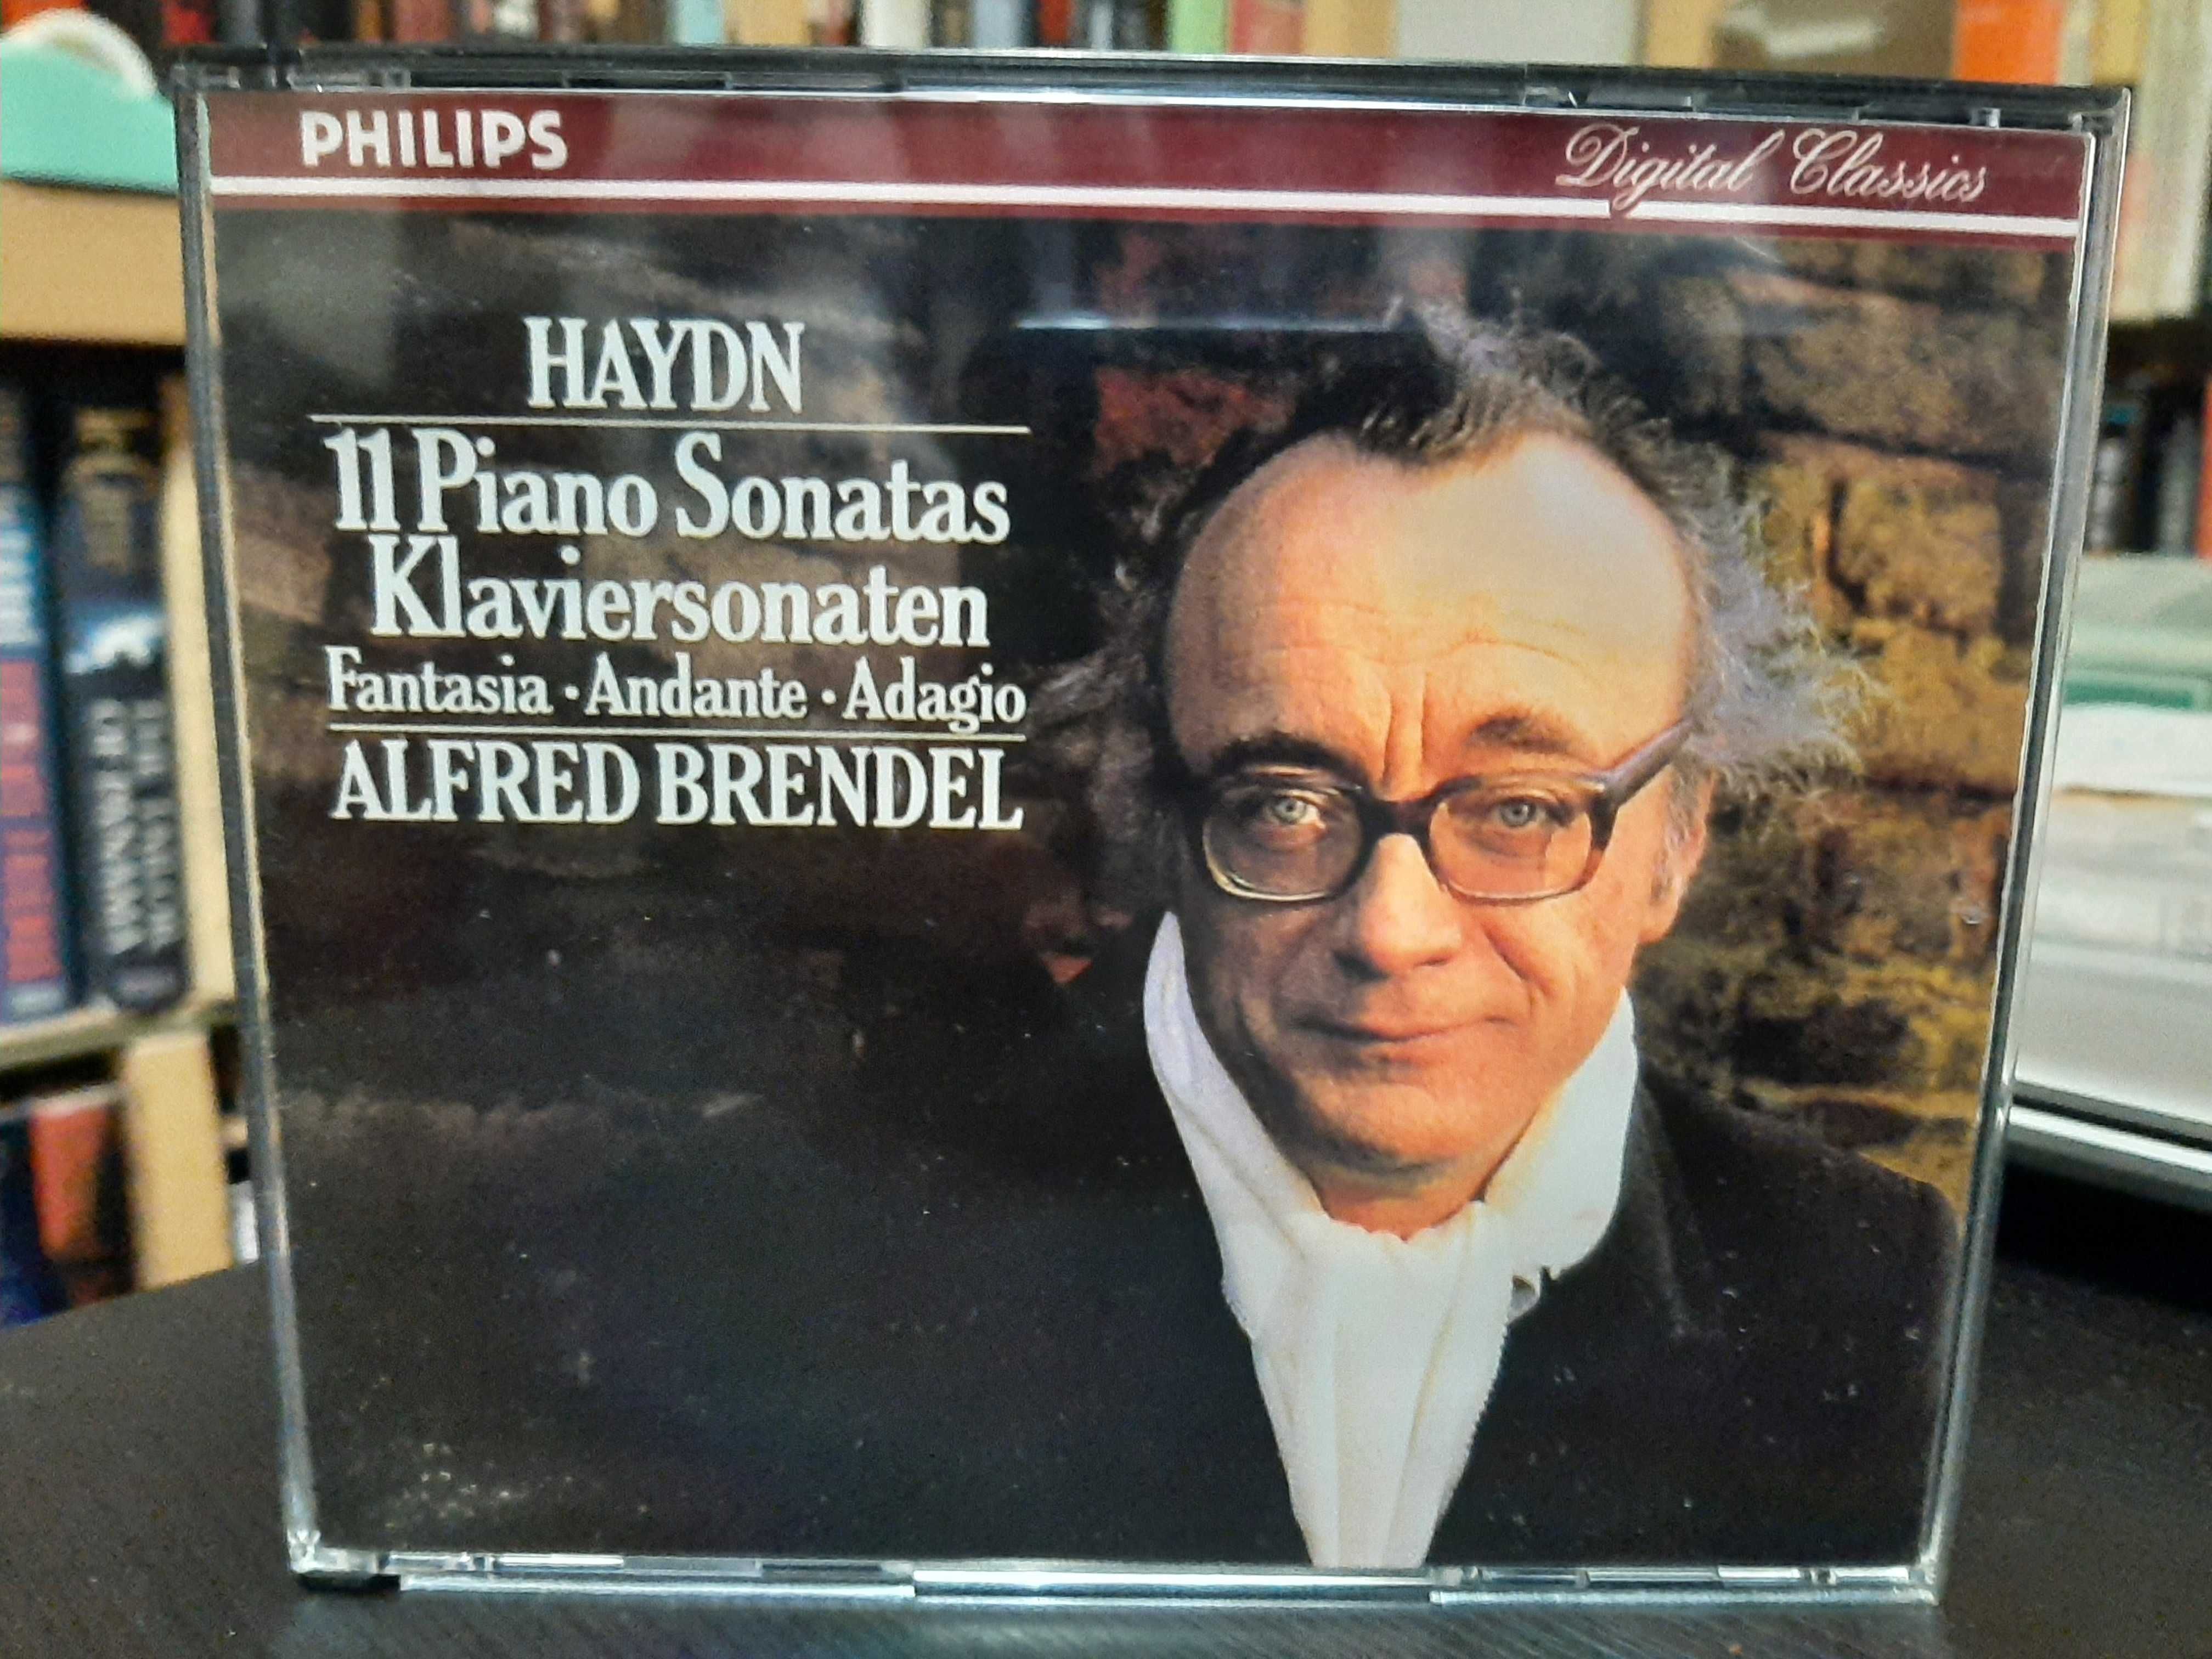 Haydn – 11 Piano Sonatas, Fantasia, Andante, Adagio – Alfred Brendel